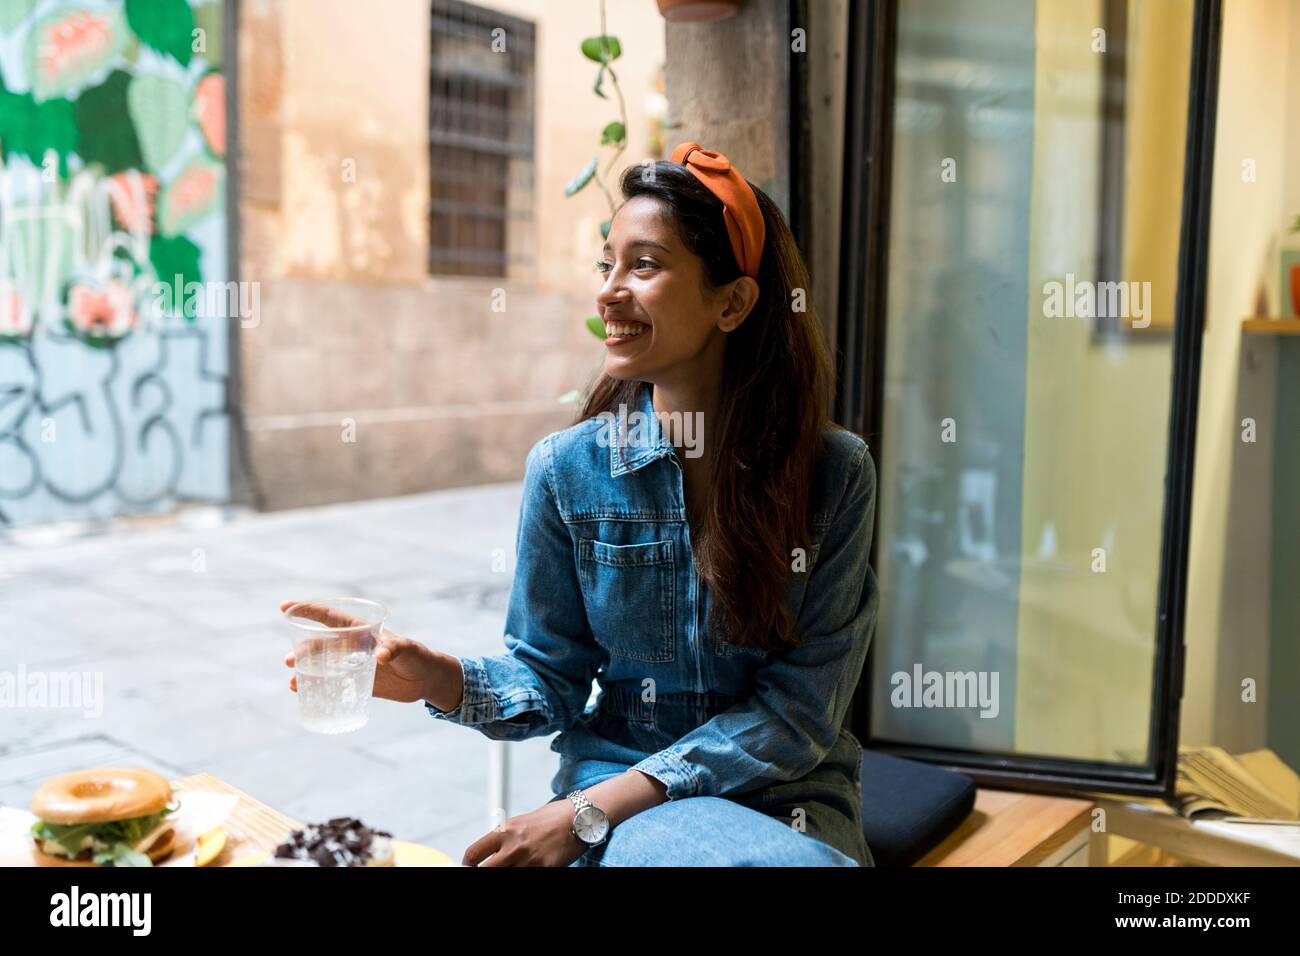 Lächelnde junge Frau, die beim Essen am Fenster sitzt Café Stockfoto